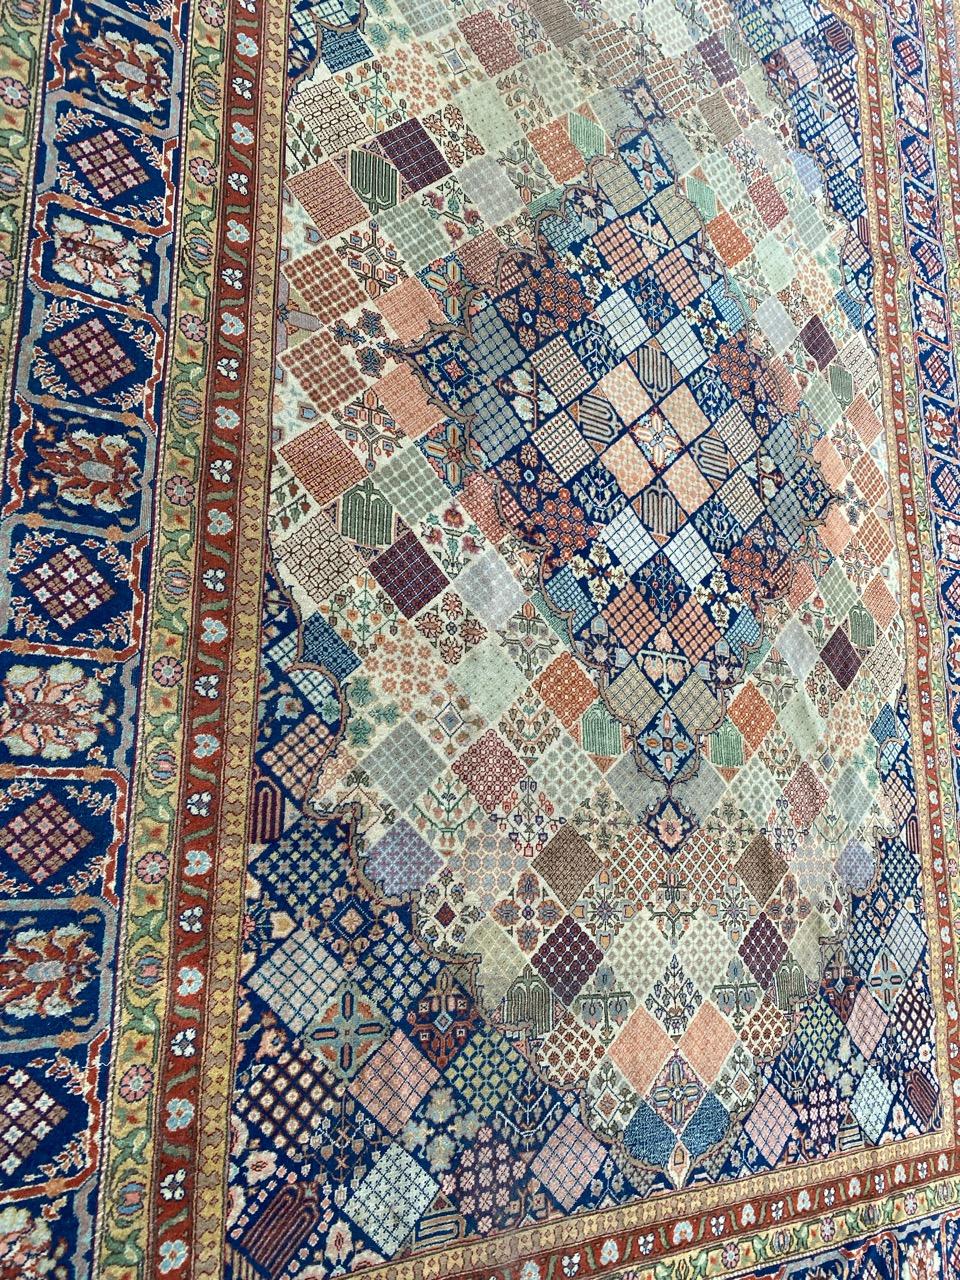 Sehr schöner großer Teppich aus der Mitte des Jahrhunderts mit schönem geometrischem und dekorativem Design und hübschen Farben, komplett handgeknüpft mit Wollsamt auf Baumwollbasis.

✨✨✨
